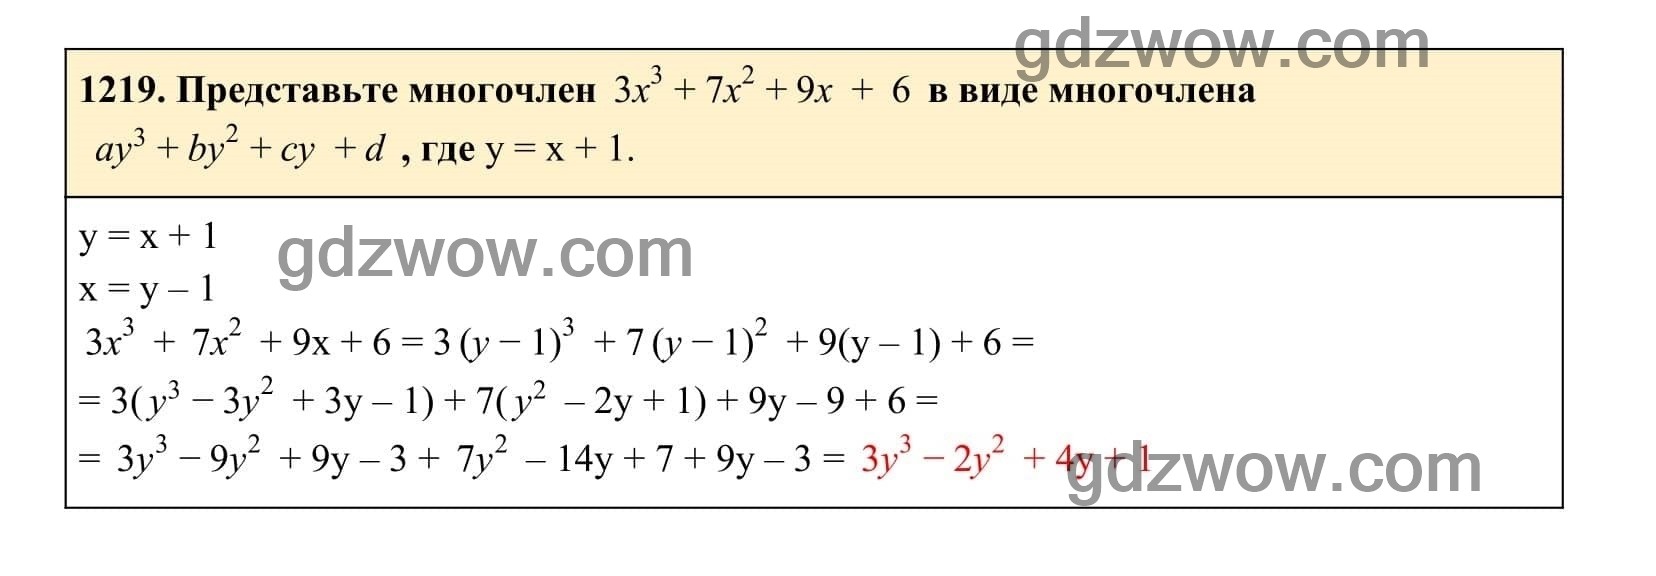 Упражнение 1219 - ГДЗ по Алгебре 7 класс Учебник Макарычев (решебник) - GDZwow